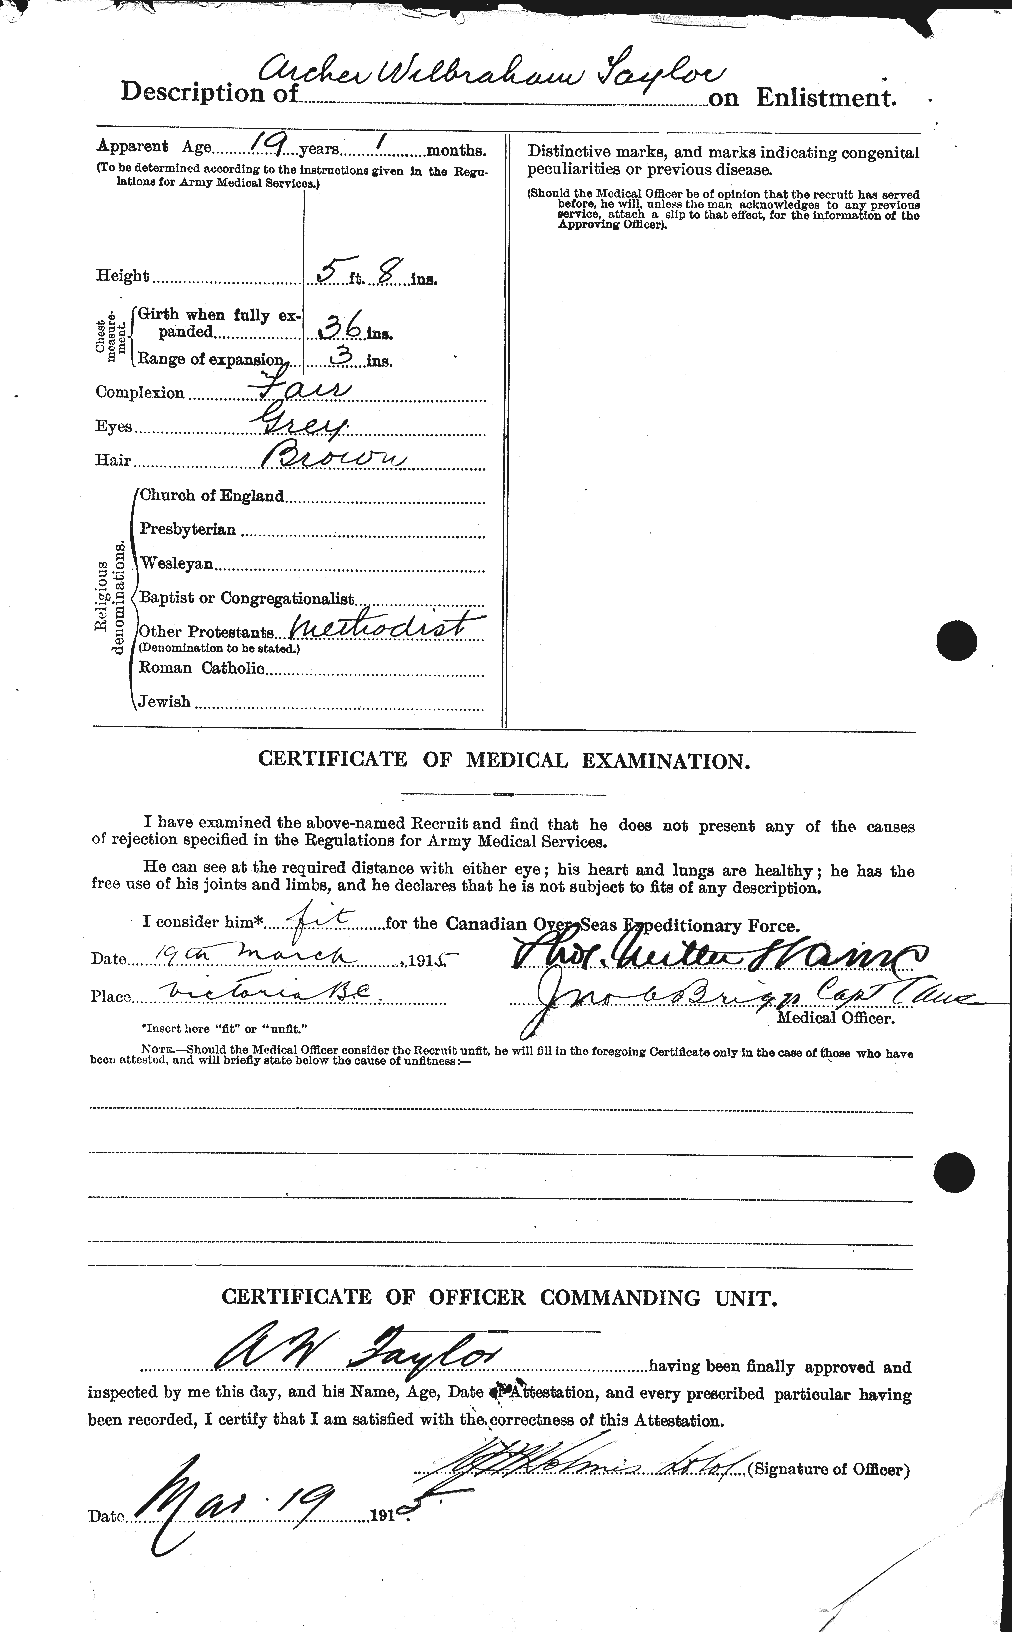 Dossiers du Personnel de la Première Guerre mondiale - CEC 626753b